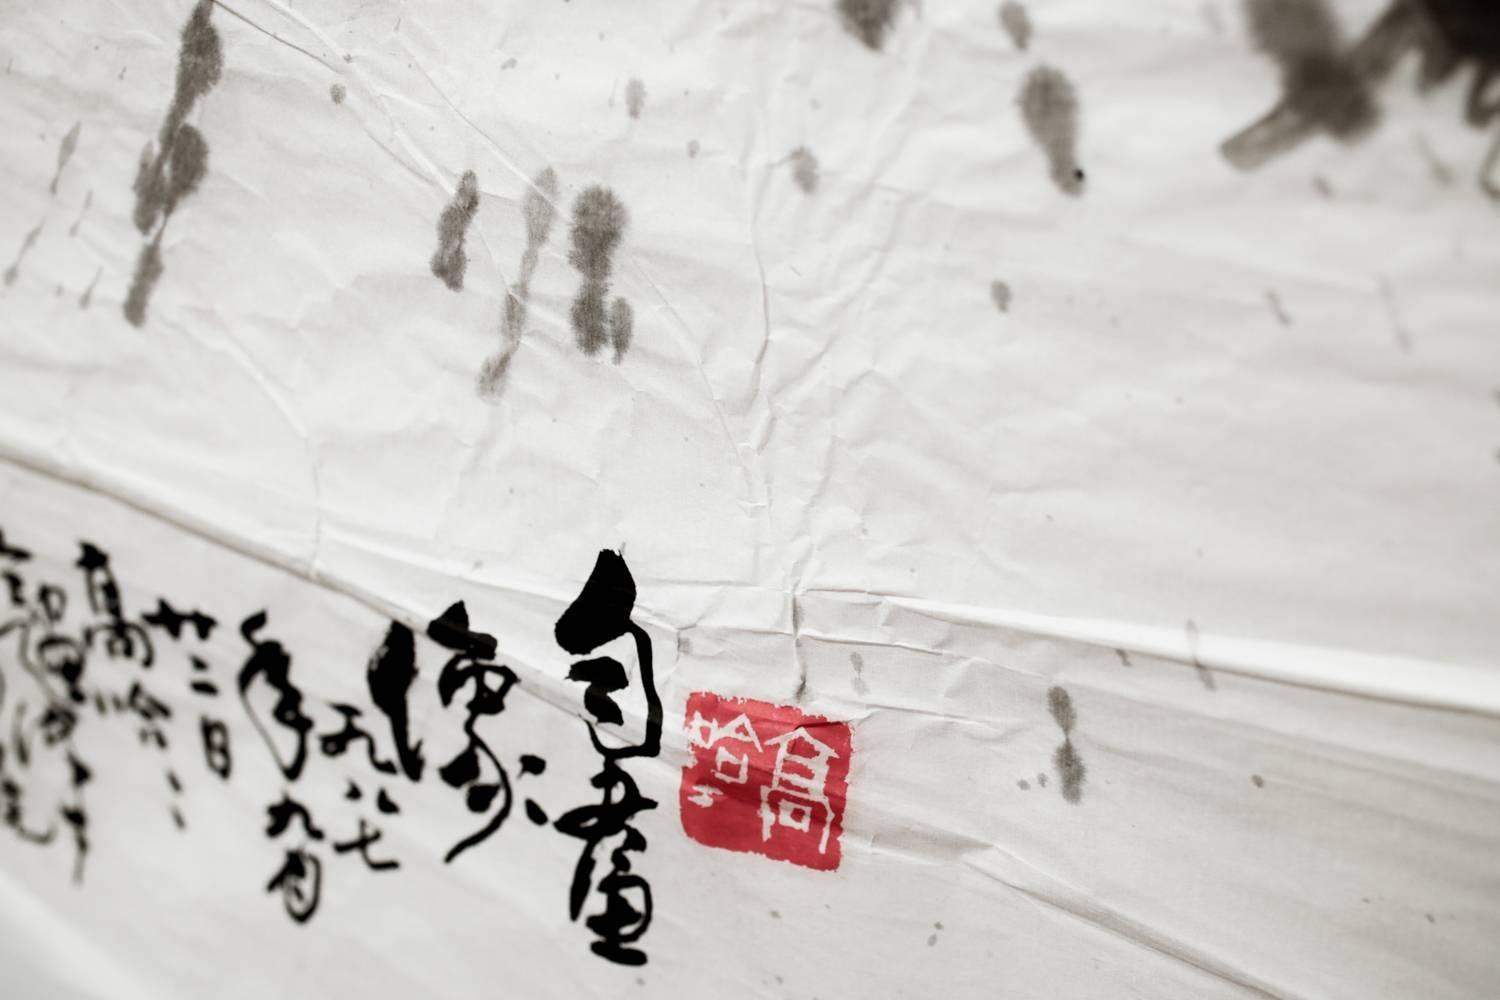 Isaiah Zagar schuf dieses Werk während eines Künstleraufenthalts in Tianjin, China, in den späten 1980er Jahren, wo er traditionelle chinesische Pinselmaltechniken erlernte.  Dieses Werk ist Teil seiner Serie 